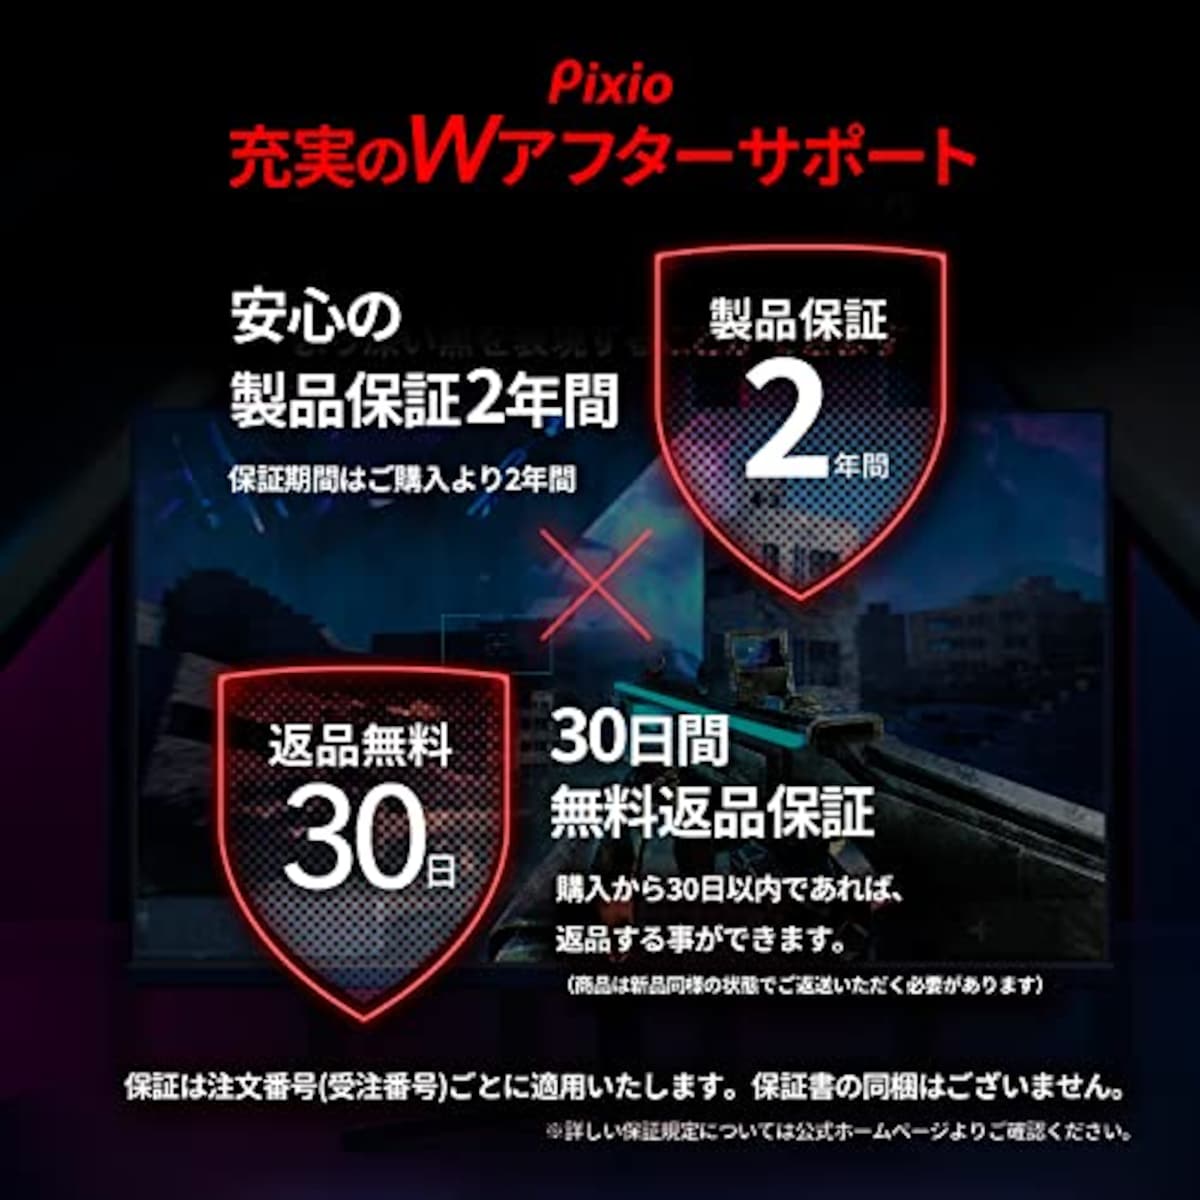  Pixio PX259 Prime ゲーミングモニター 24.5インチ FHD IPS 280Hz 1ms スピーカー内蔵 2年保証画像6 